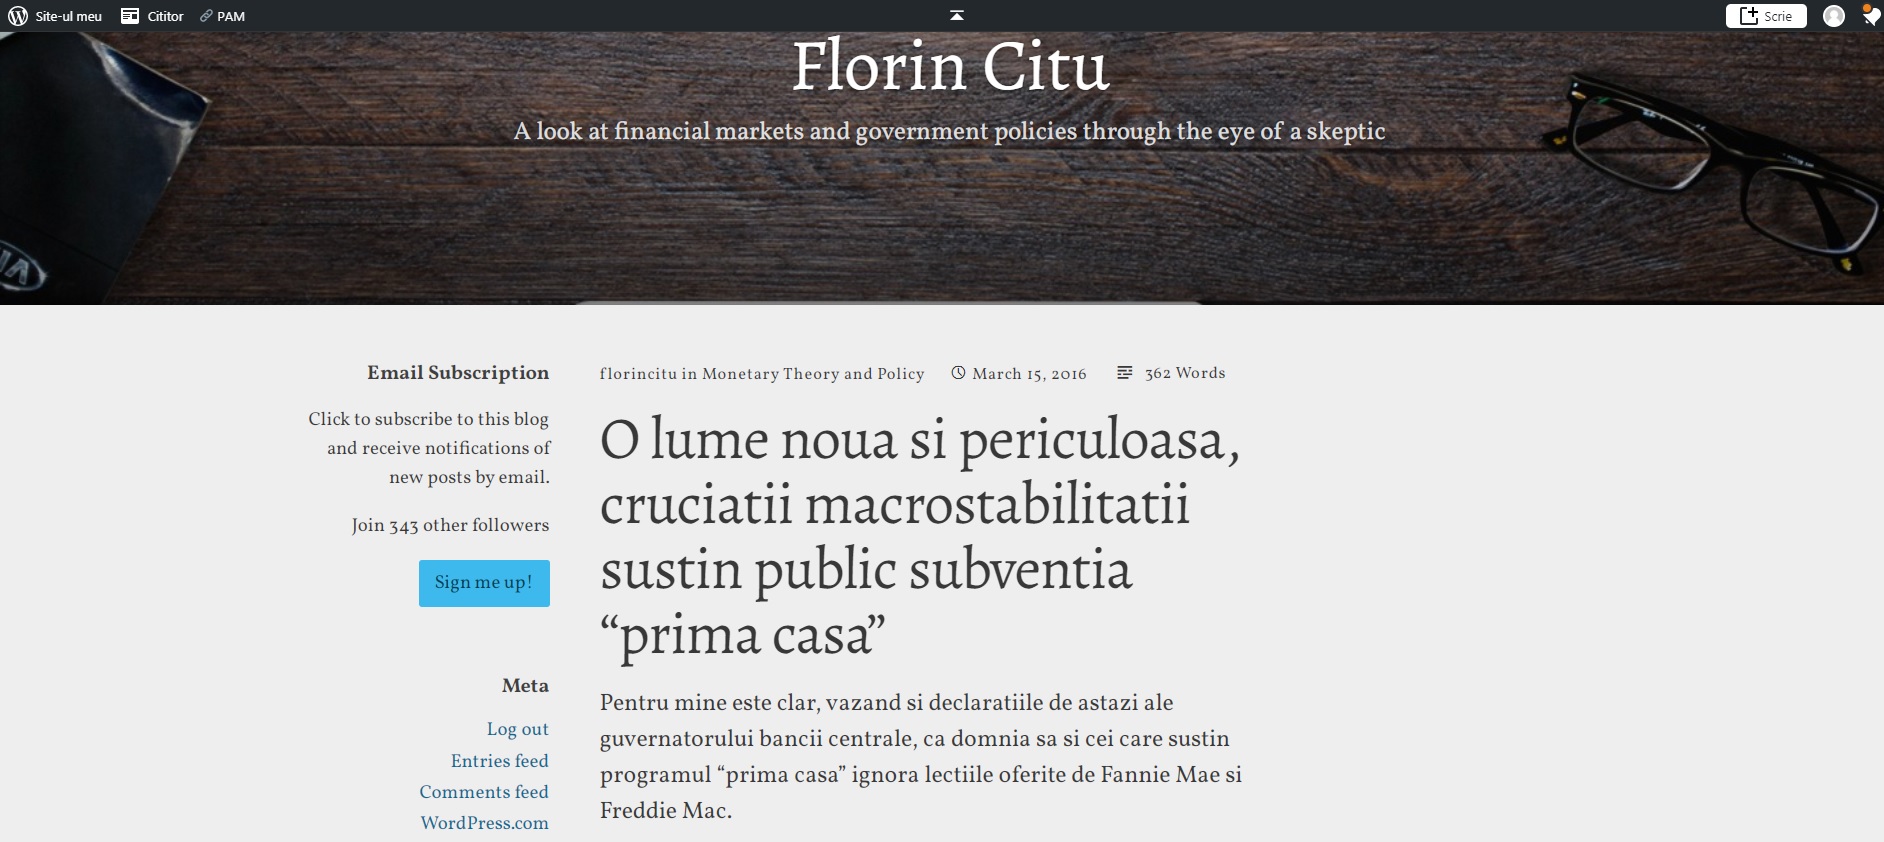 Florin Citu - Blog